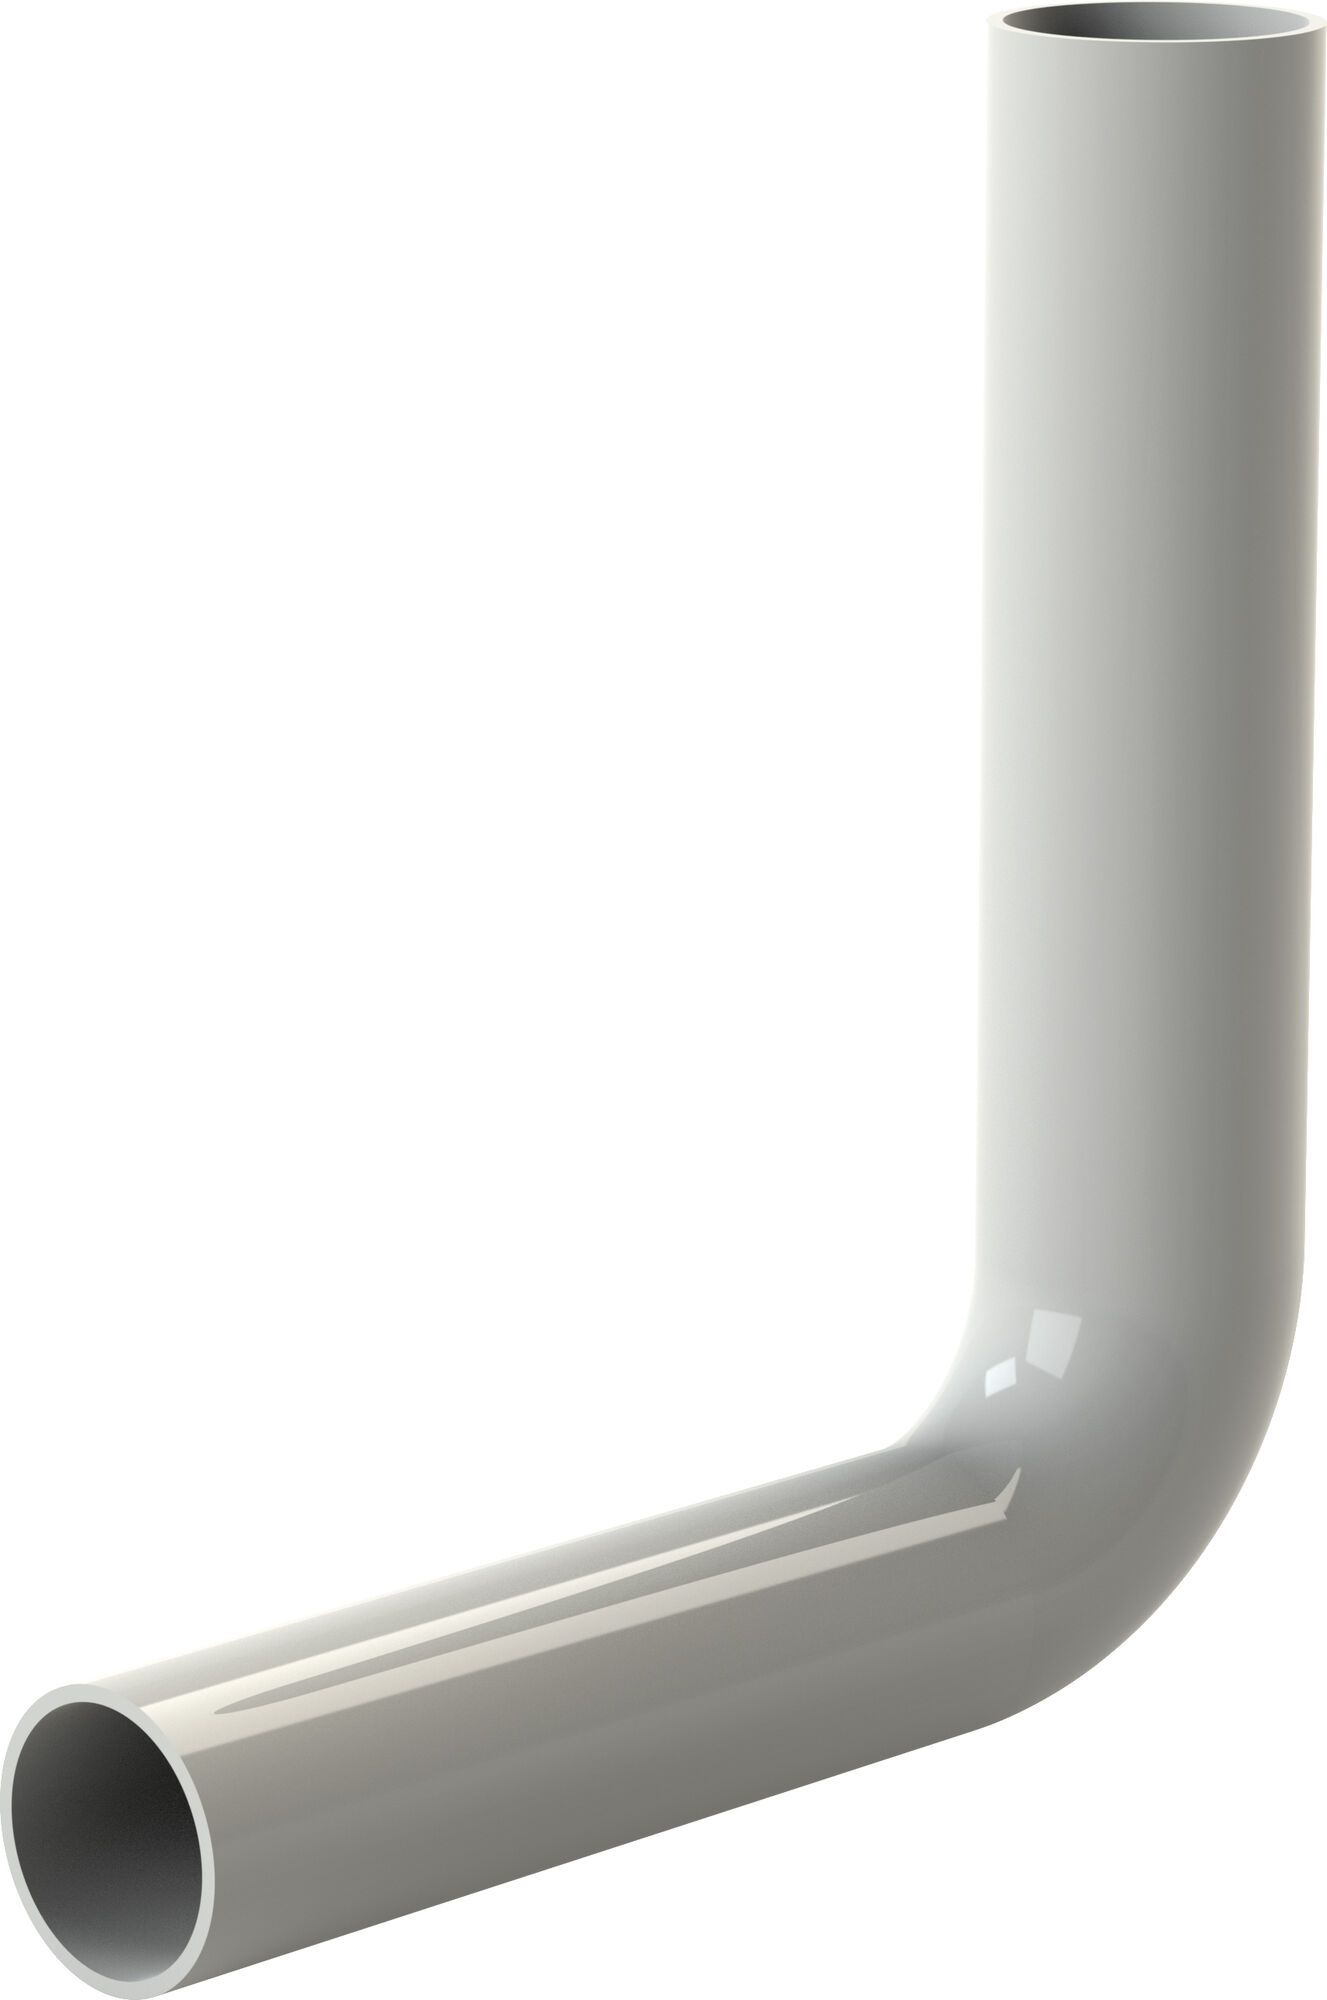 Flush pipe elbow, 230 x 210 mm, white